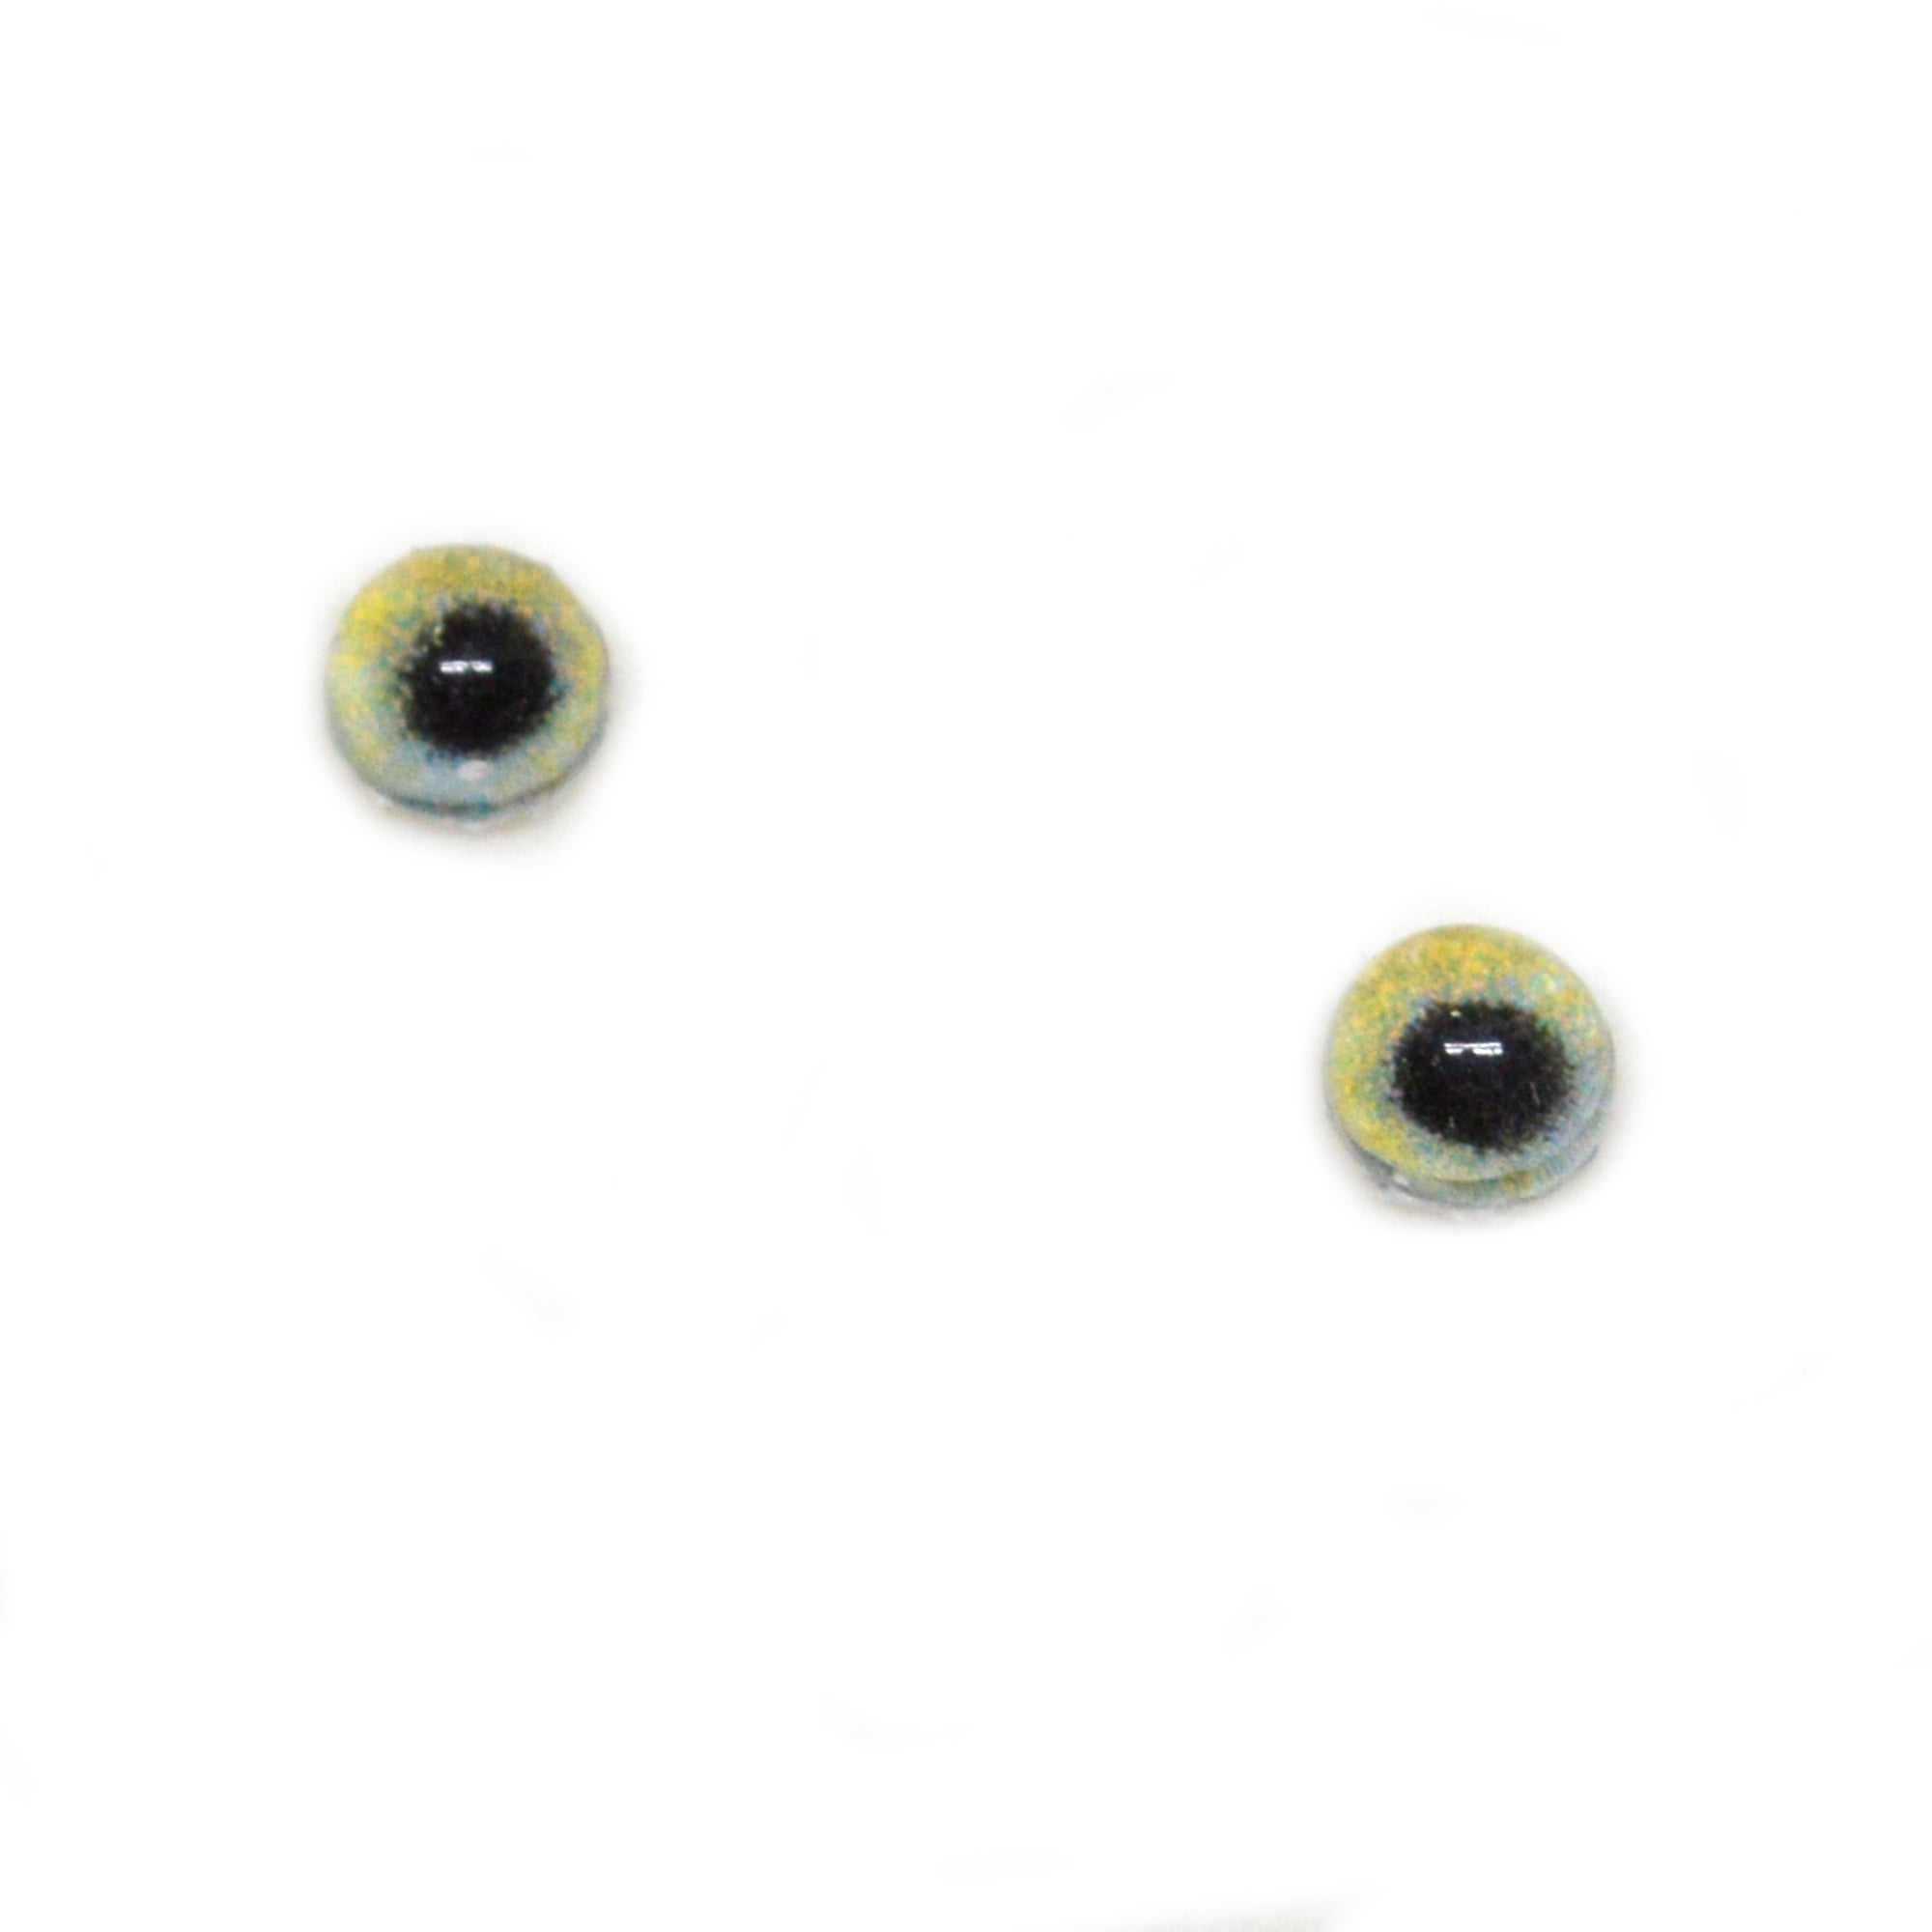 Doll Eyes :: Traditional Doll Eyes :: 4 mm Mini Doll Eyes :: Mini Doll Eyes  15KN - Awesome Eyes for Your Creations